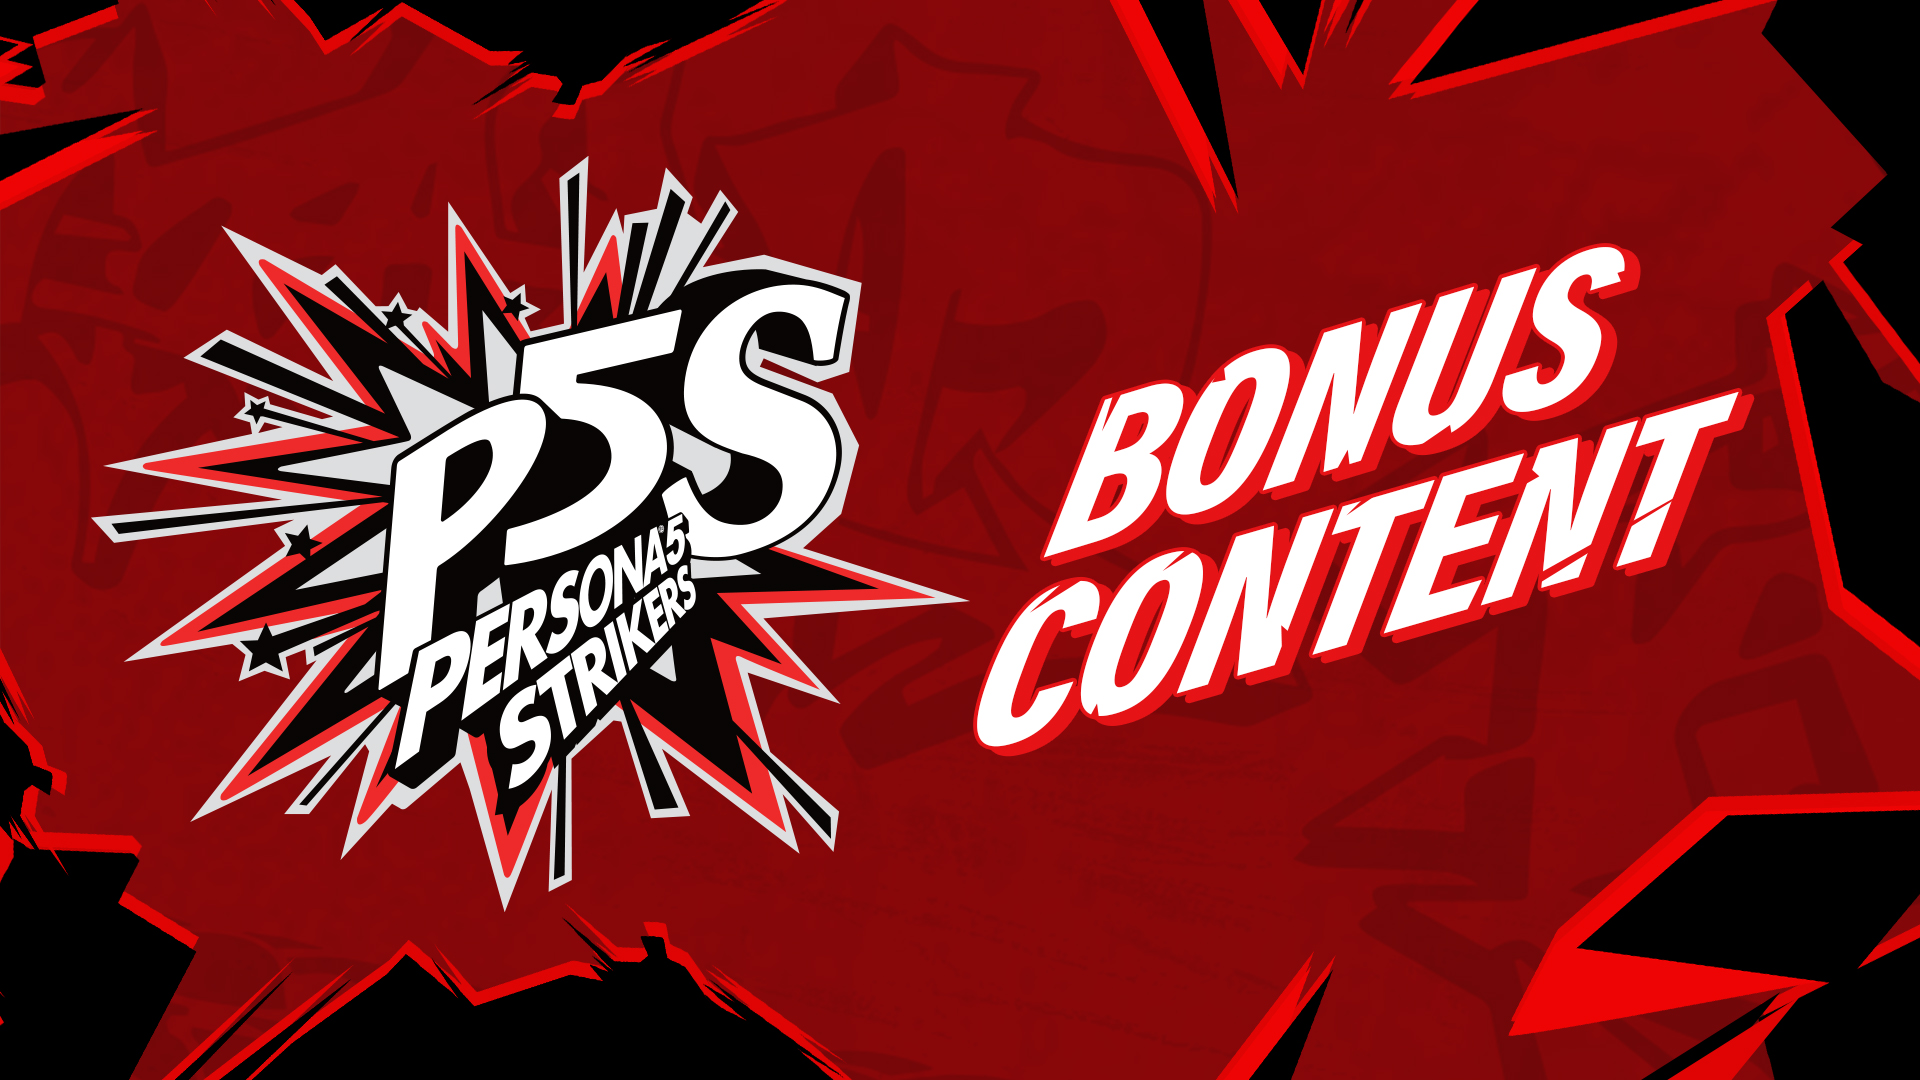 Persona®5 Strikers Bonus Content